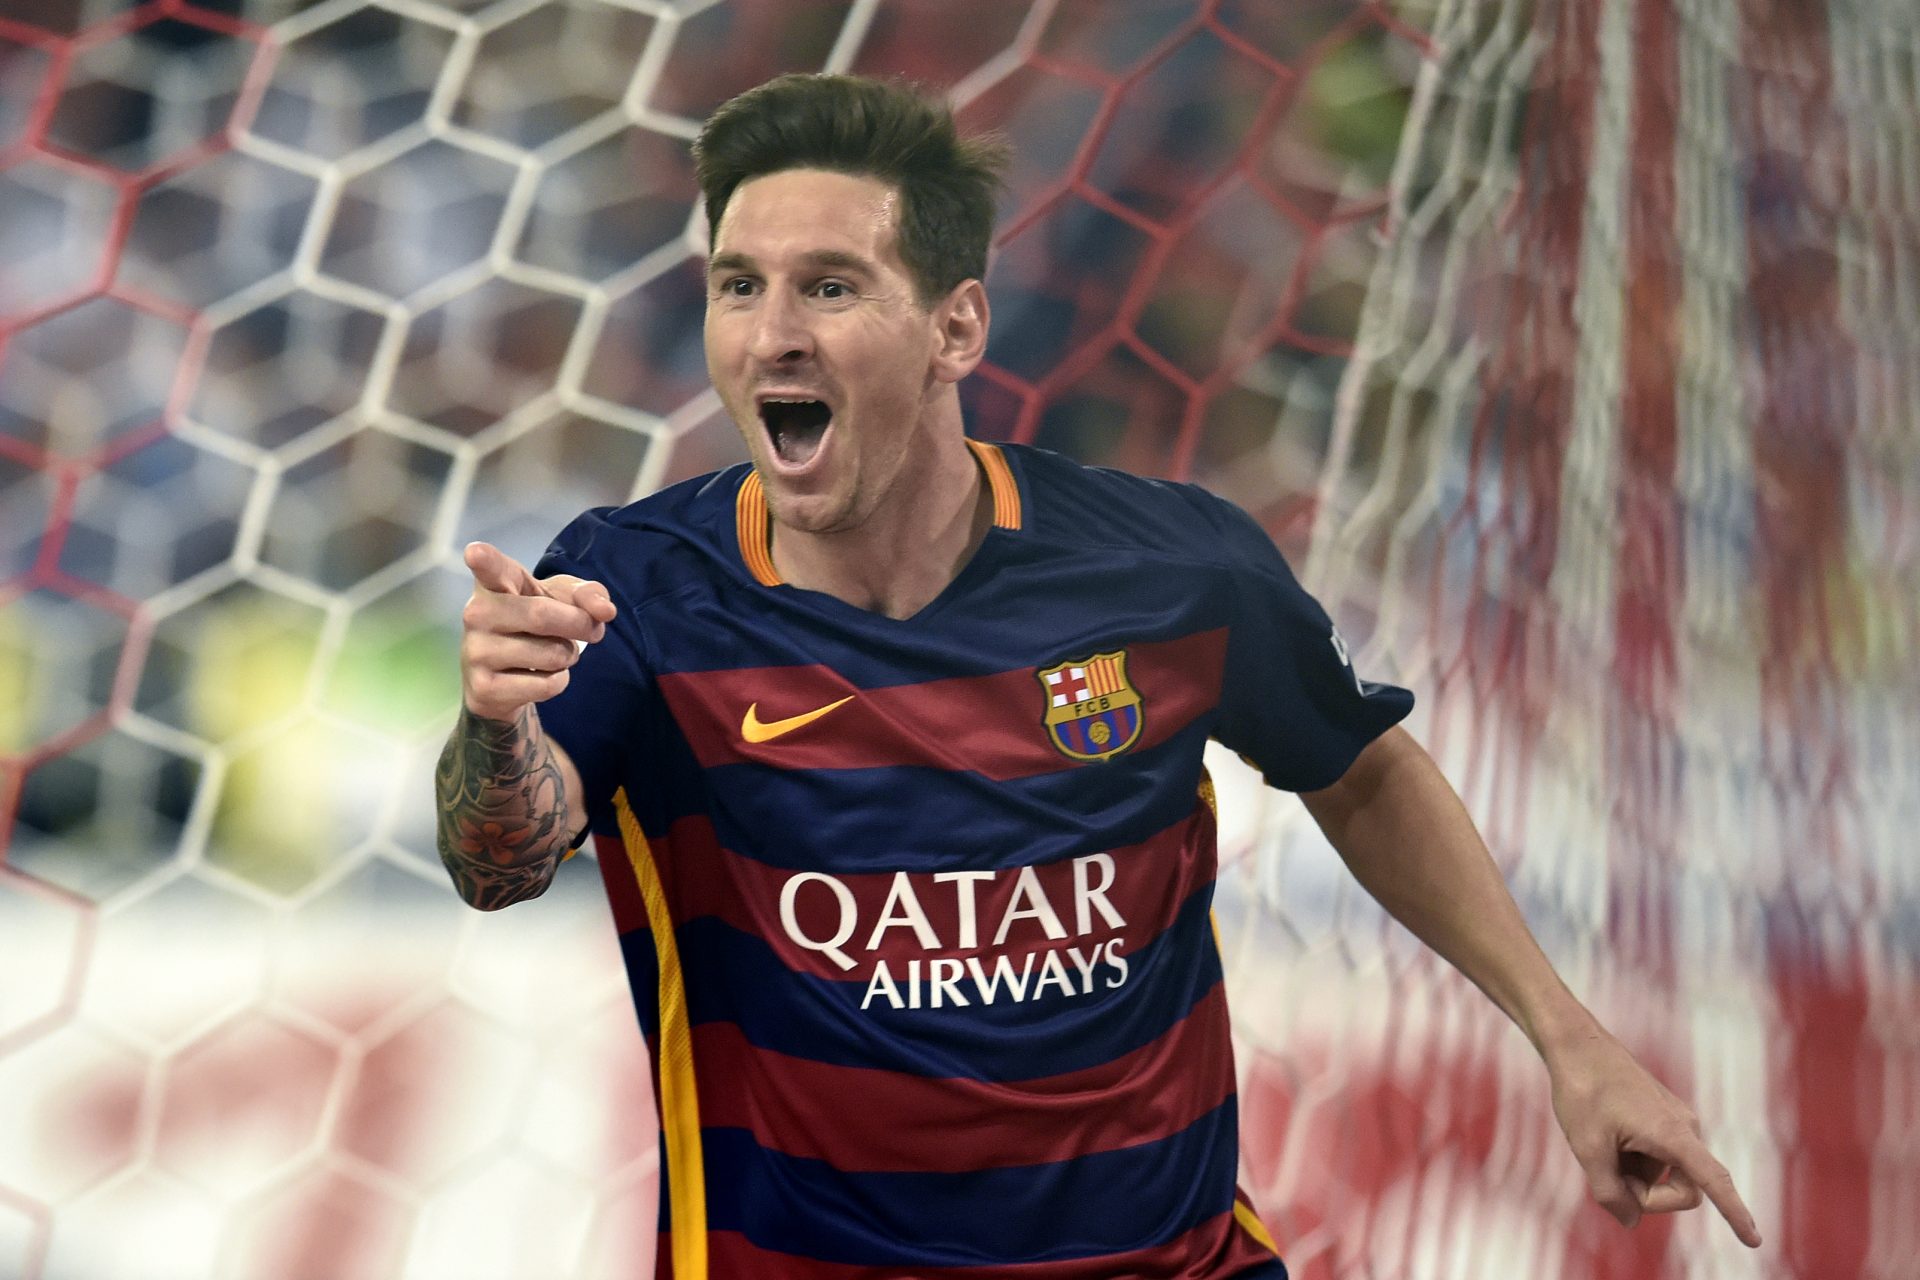 Iban a ser los sucesores de Messi en el Barça pero fracasaron en el intento